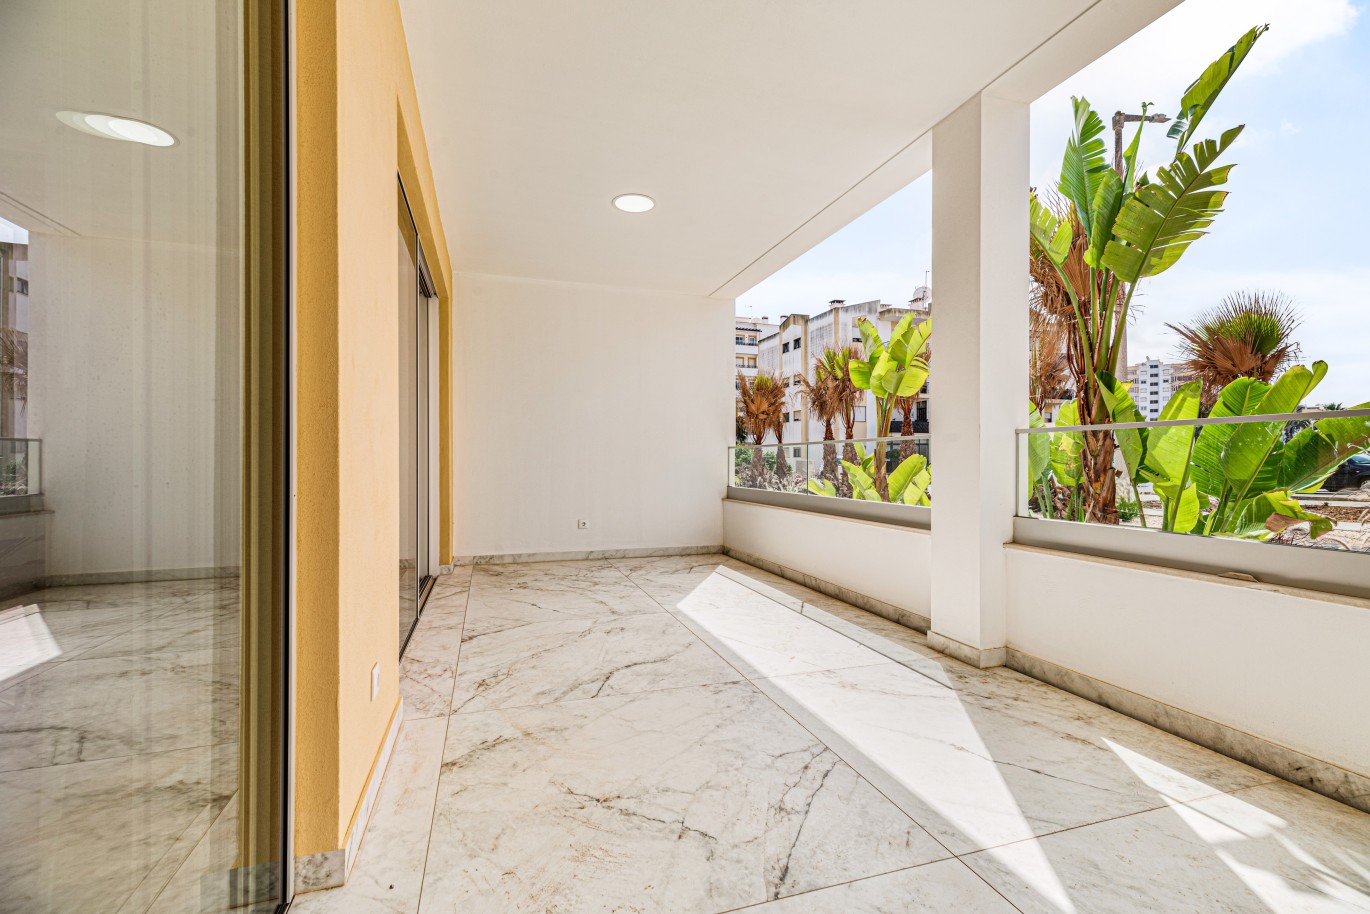 Apartamento, com terraço, para venda, em Lagos, Algarve_238451